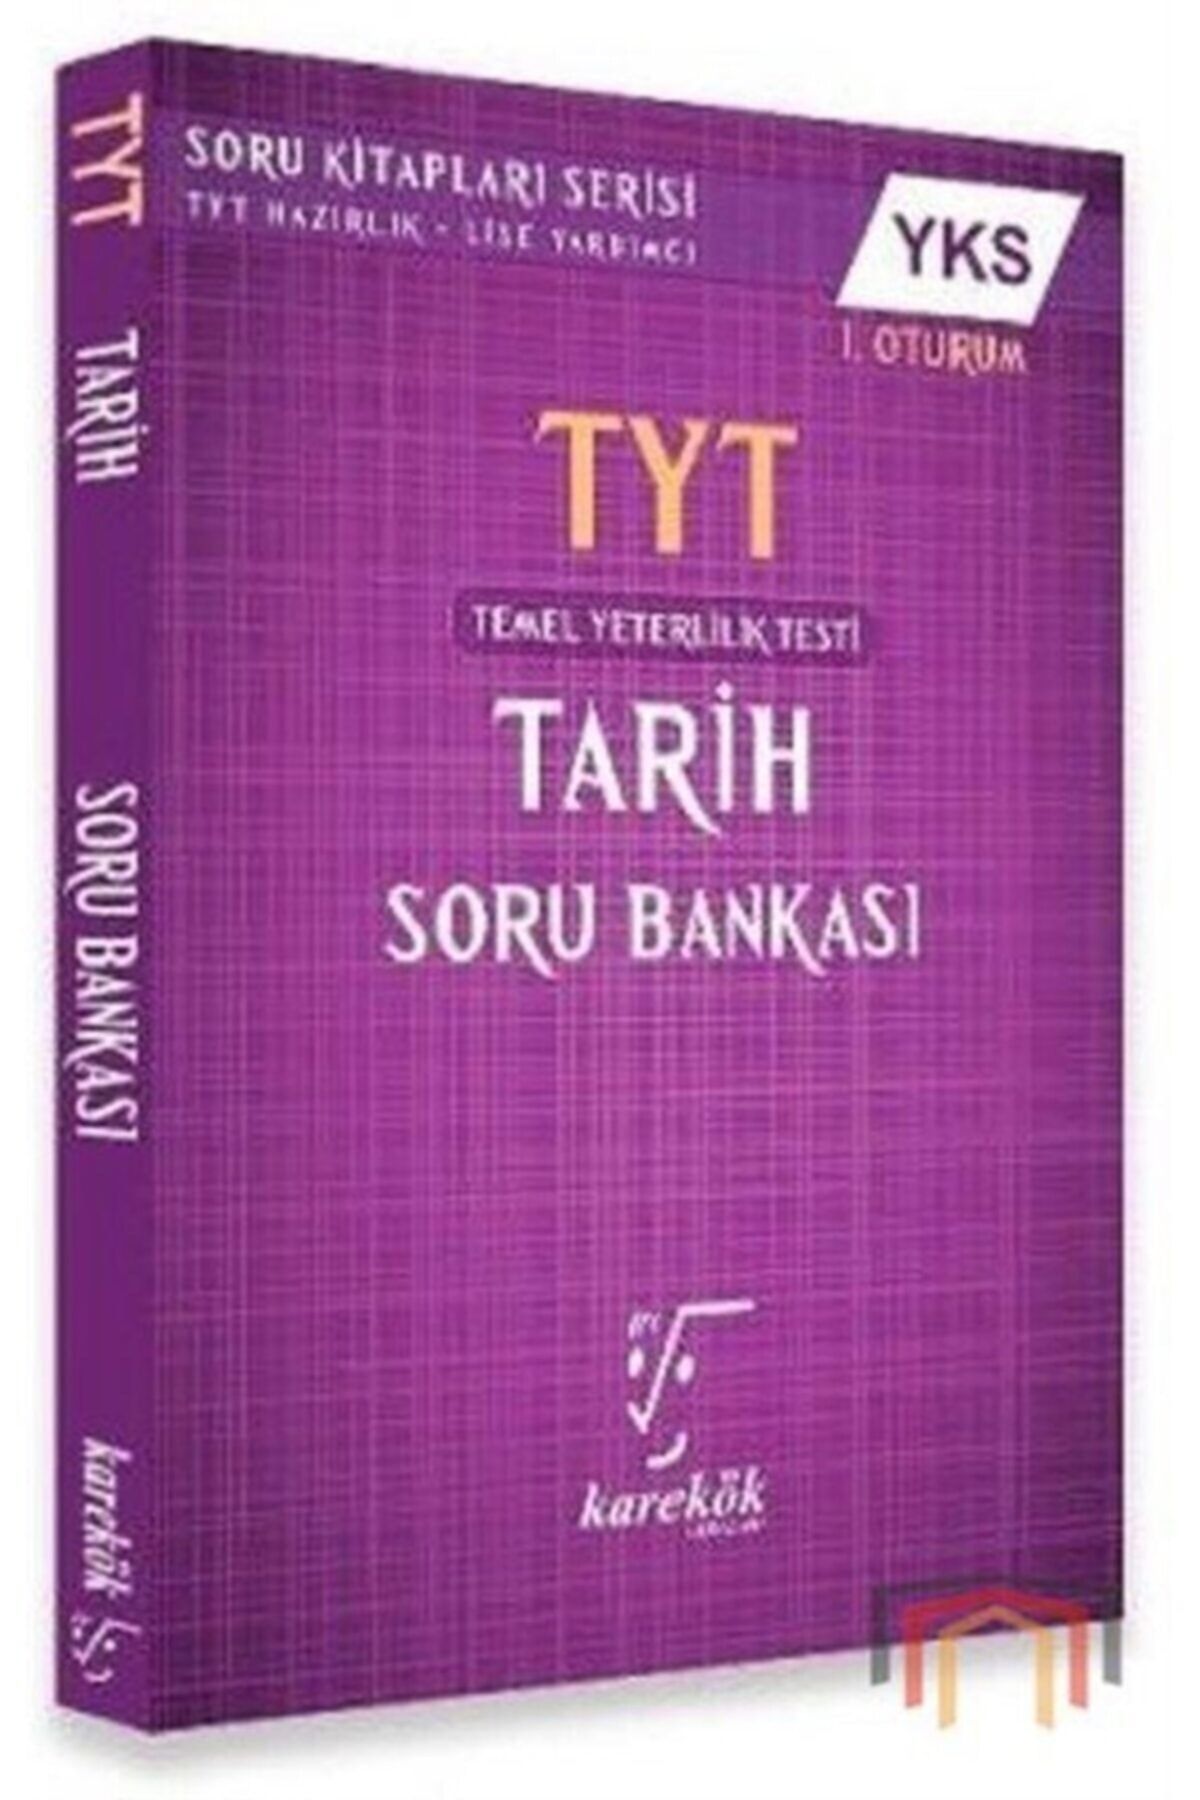 Karekök Yayınları Yks 1.oturum Tyt Tarih Soru Bankası